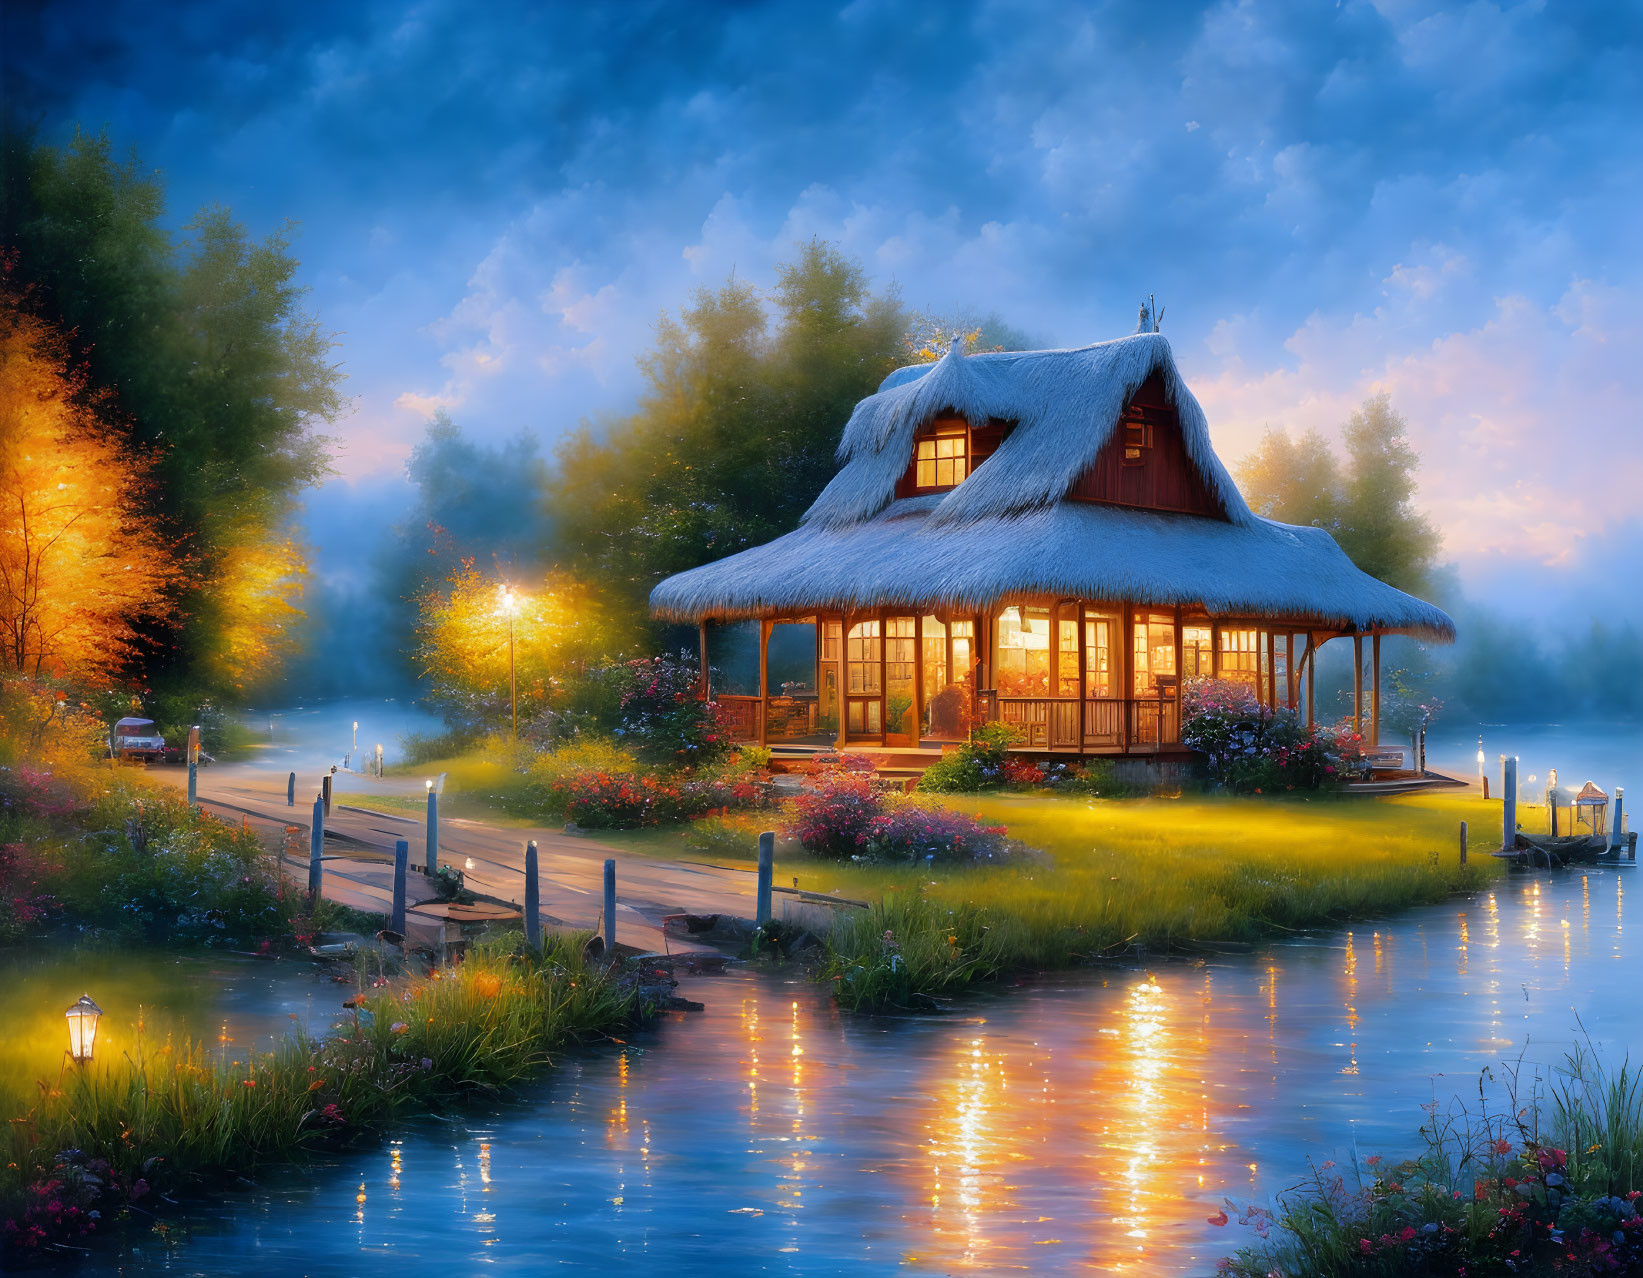 A beautiful hut on riverside